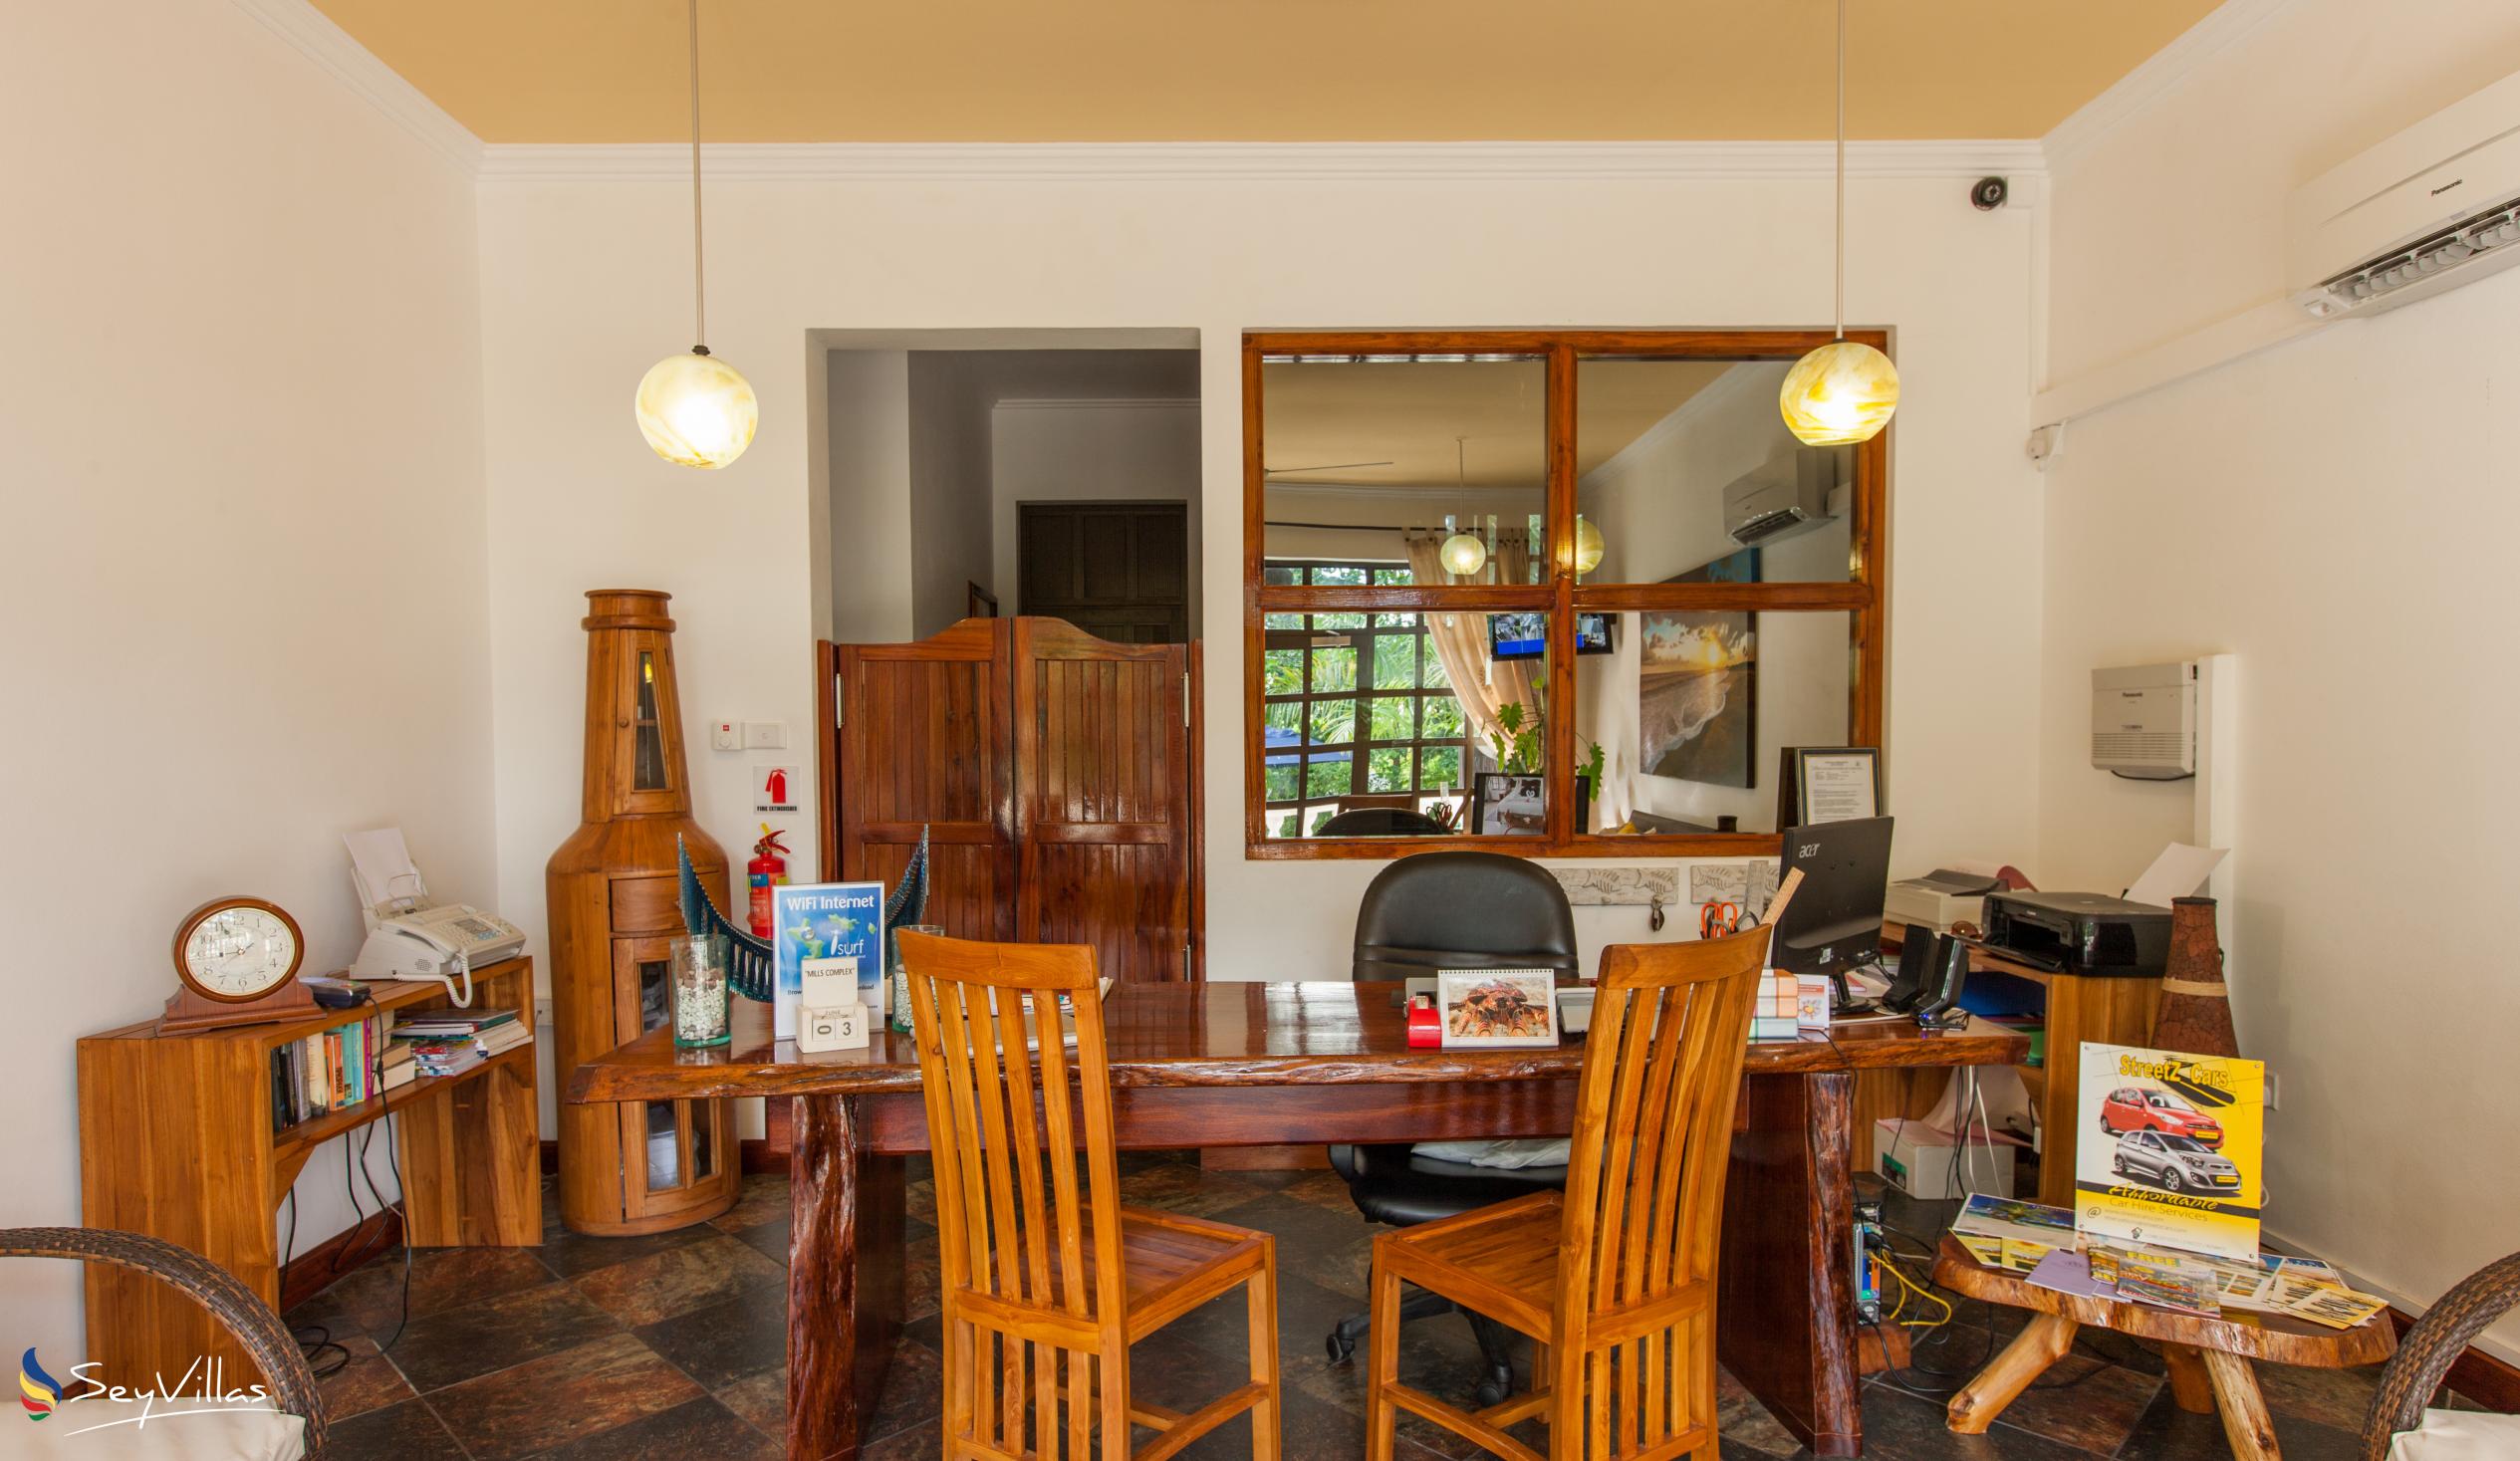 Photo 18: La Digue Self Catering - Indoor area - La Digue (Seychelles)